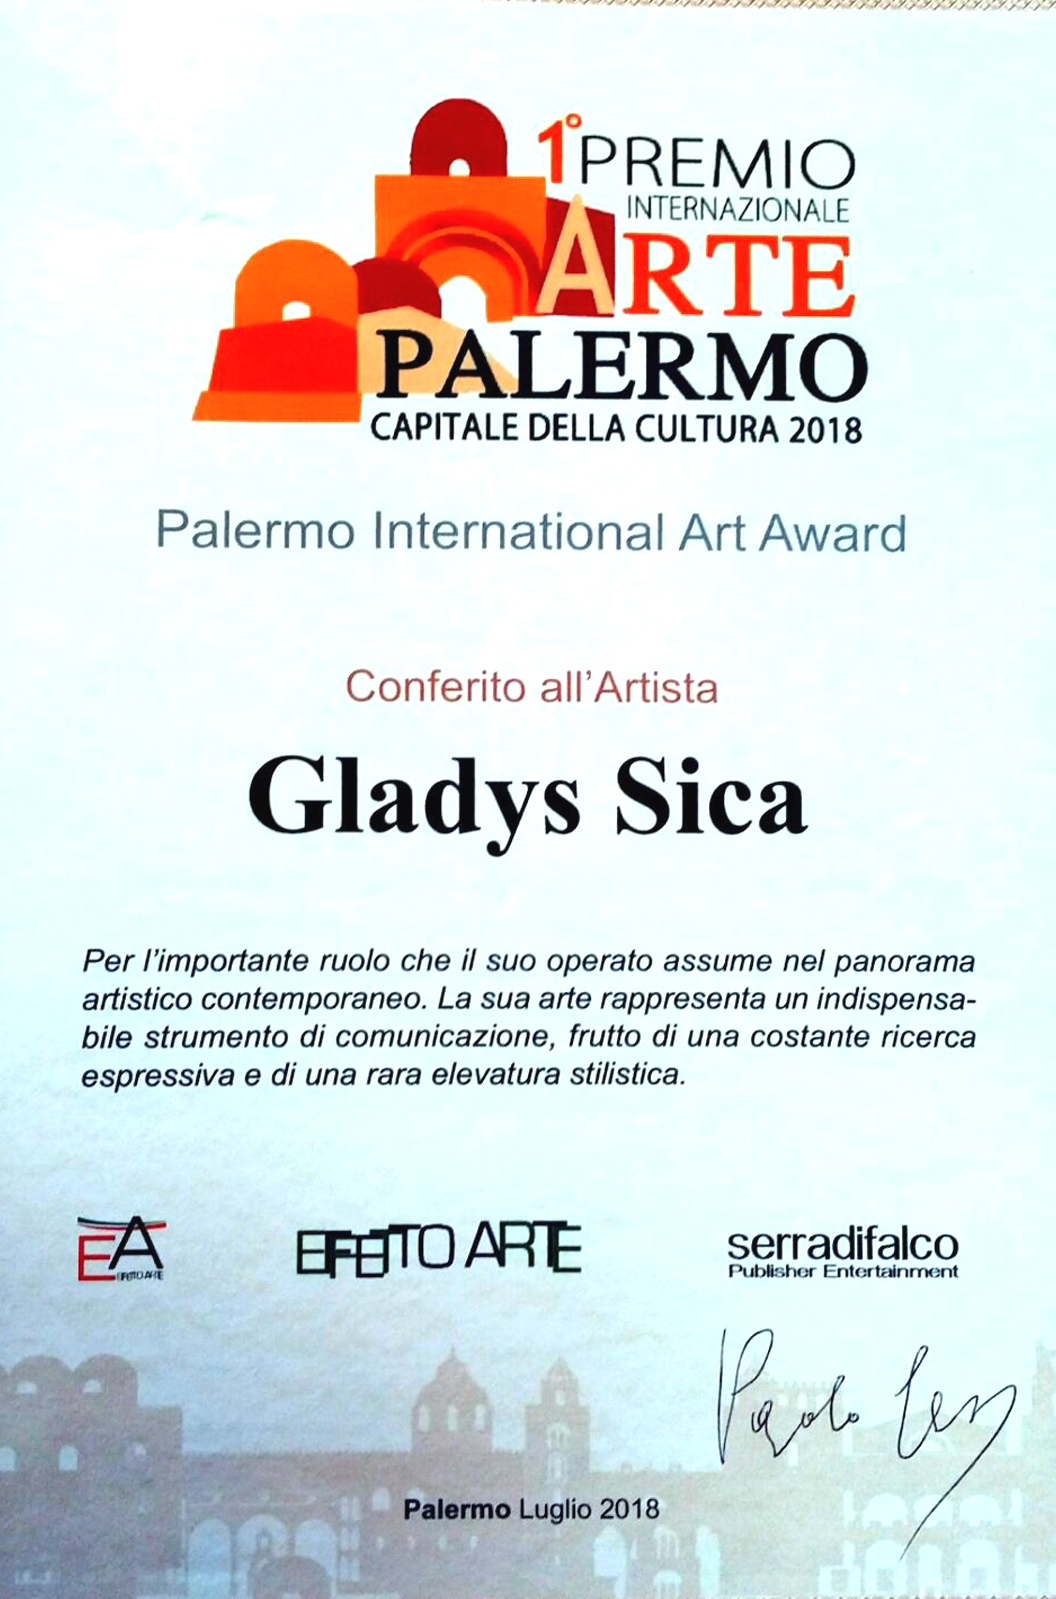 2018 - Premio 'Rilevanza Percorso Artistico', Editoriale Effetto Arte, a cura di Paolo Levi, Palermo.